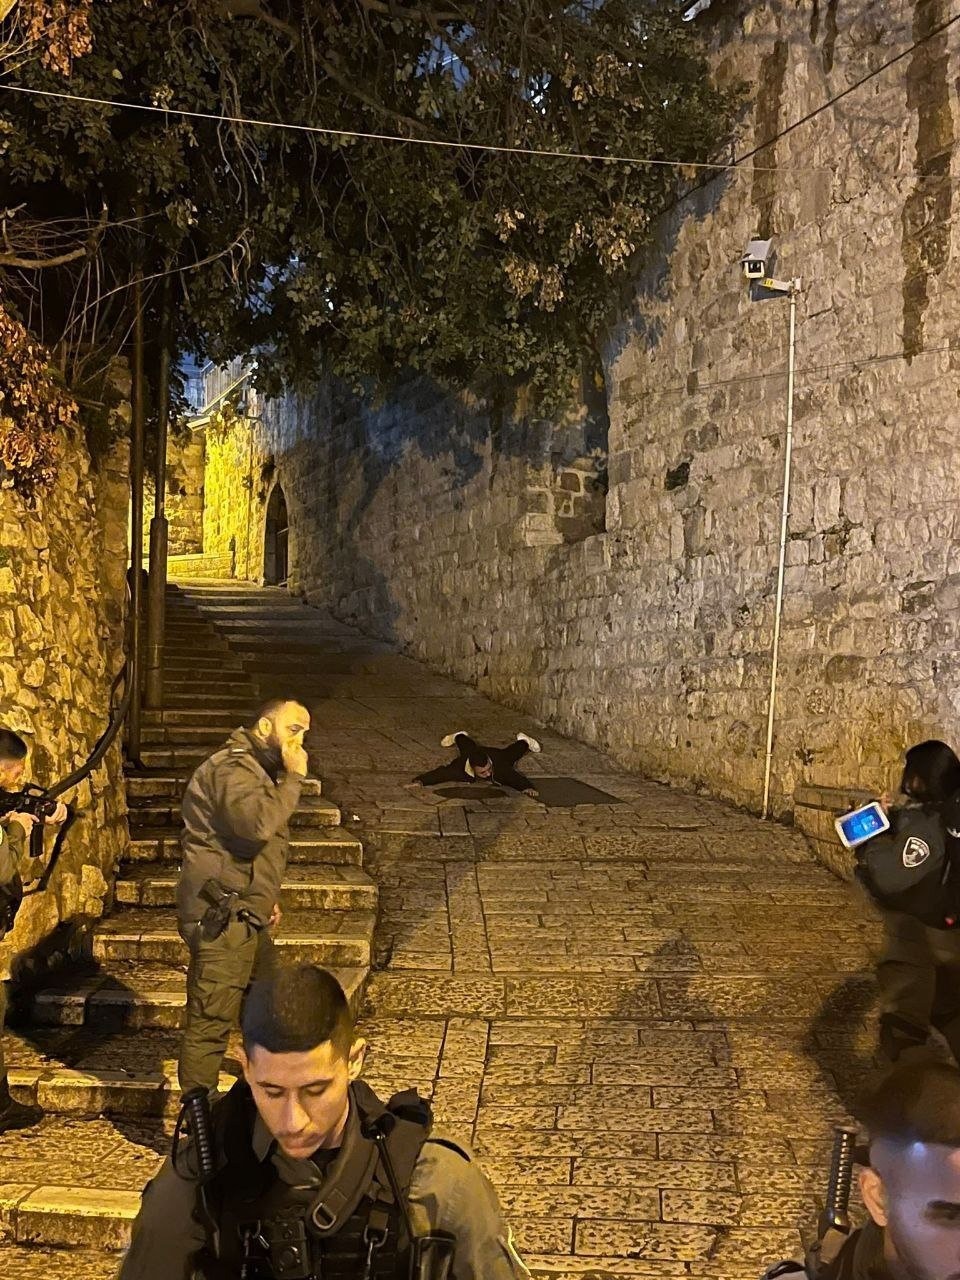 الشرطة الإسرائيلية تستقدم  -وربوت- لفحص الشاب محتجز في القدس القديمة.jpg